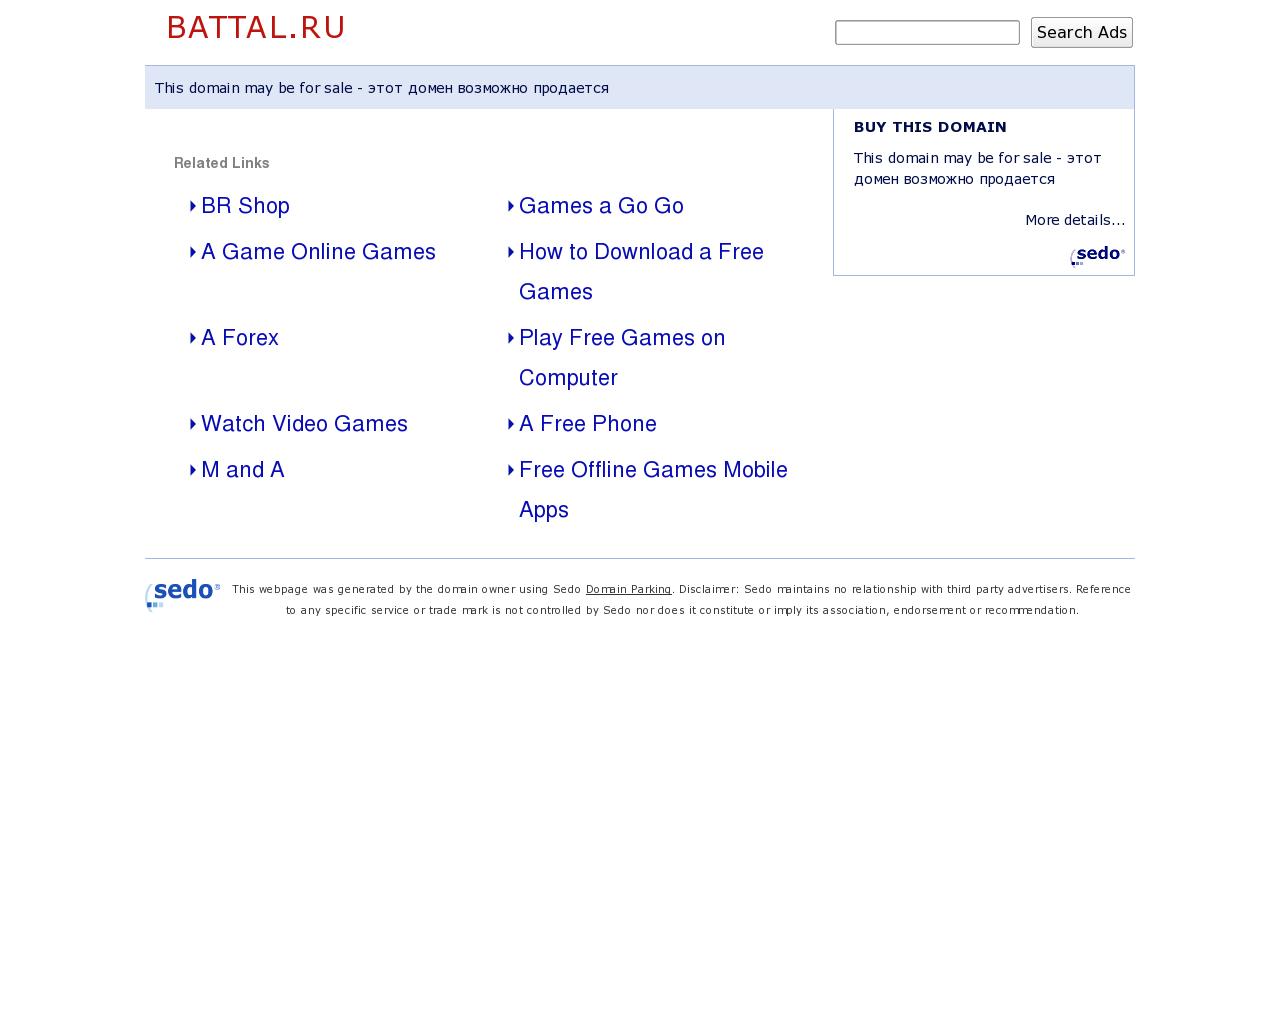 Изображение сайта battal.ru в разрешении 1280x1024